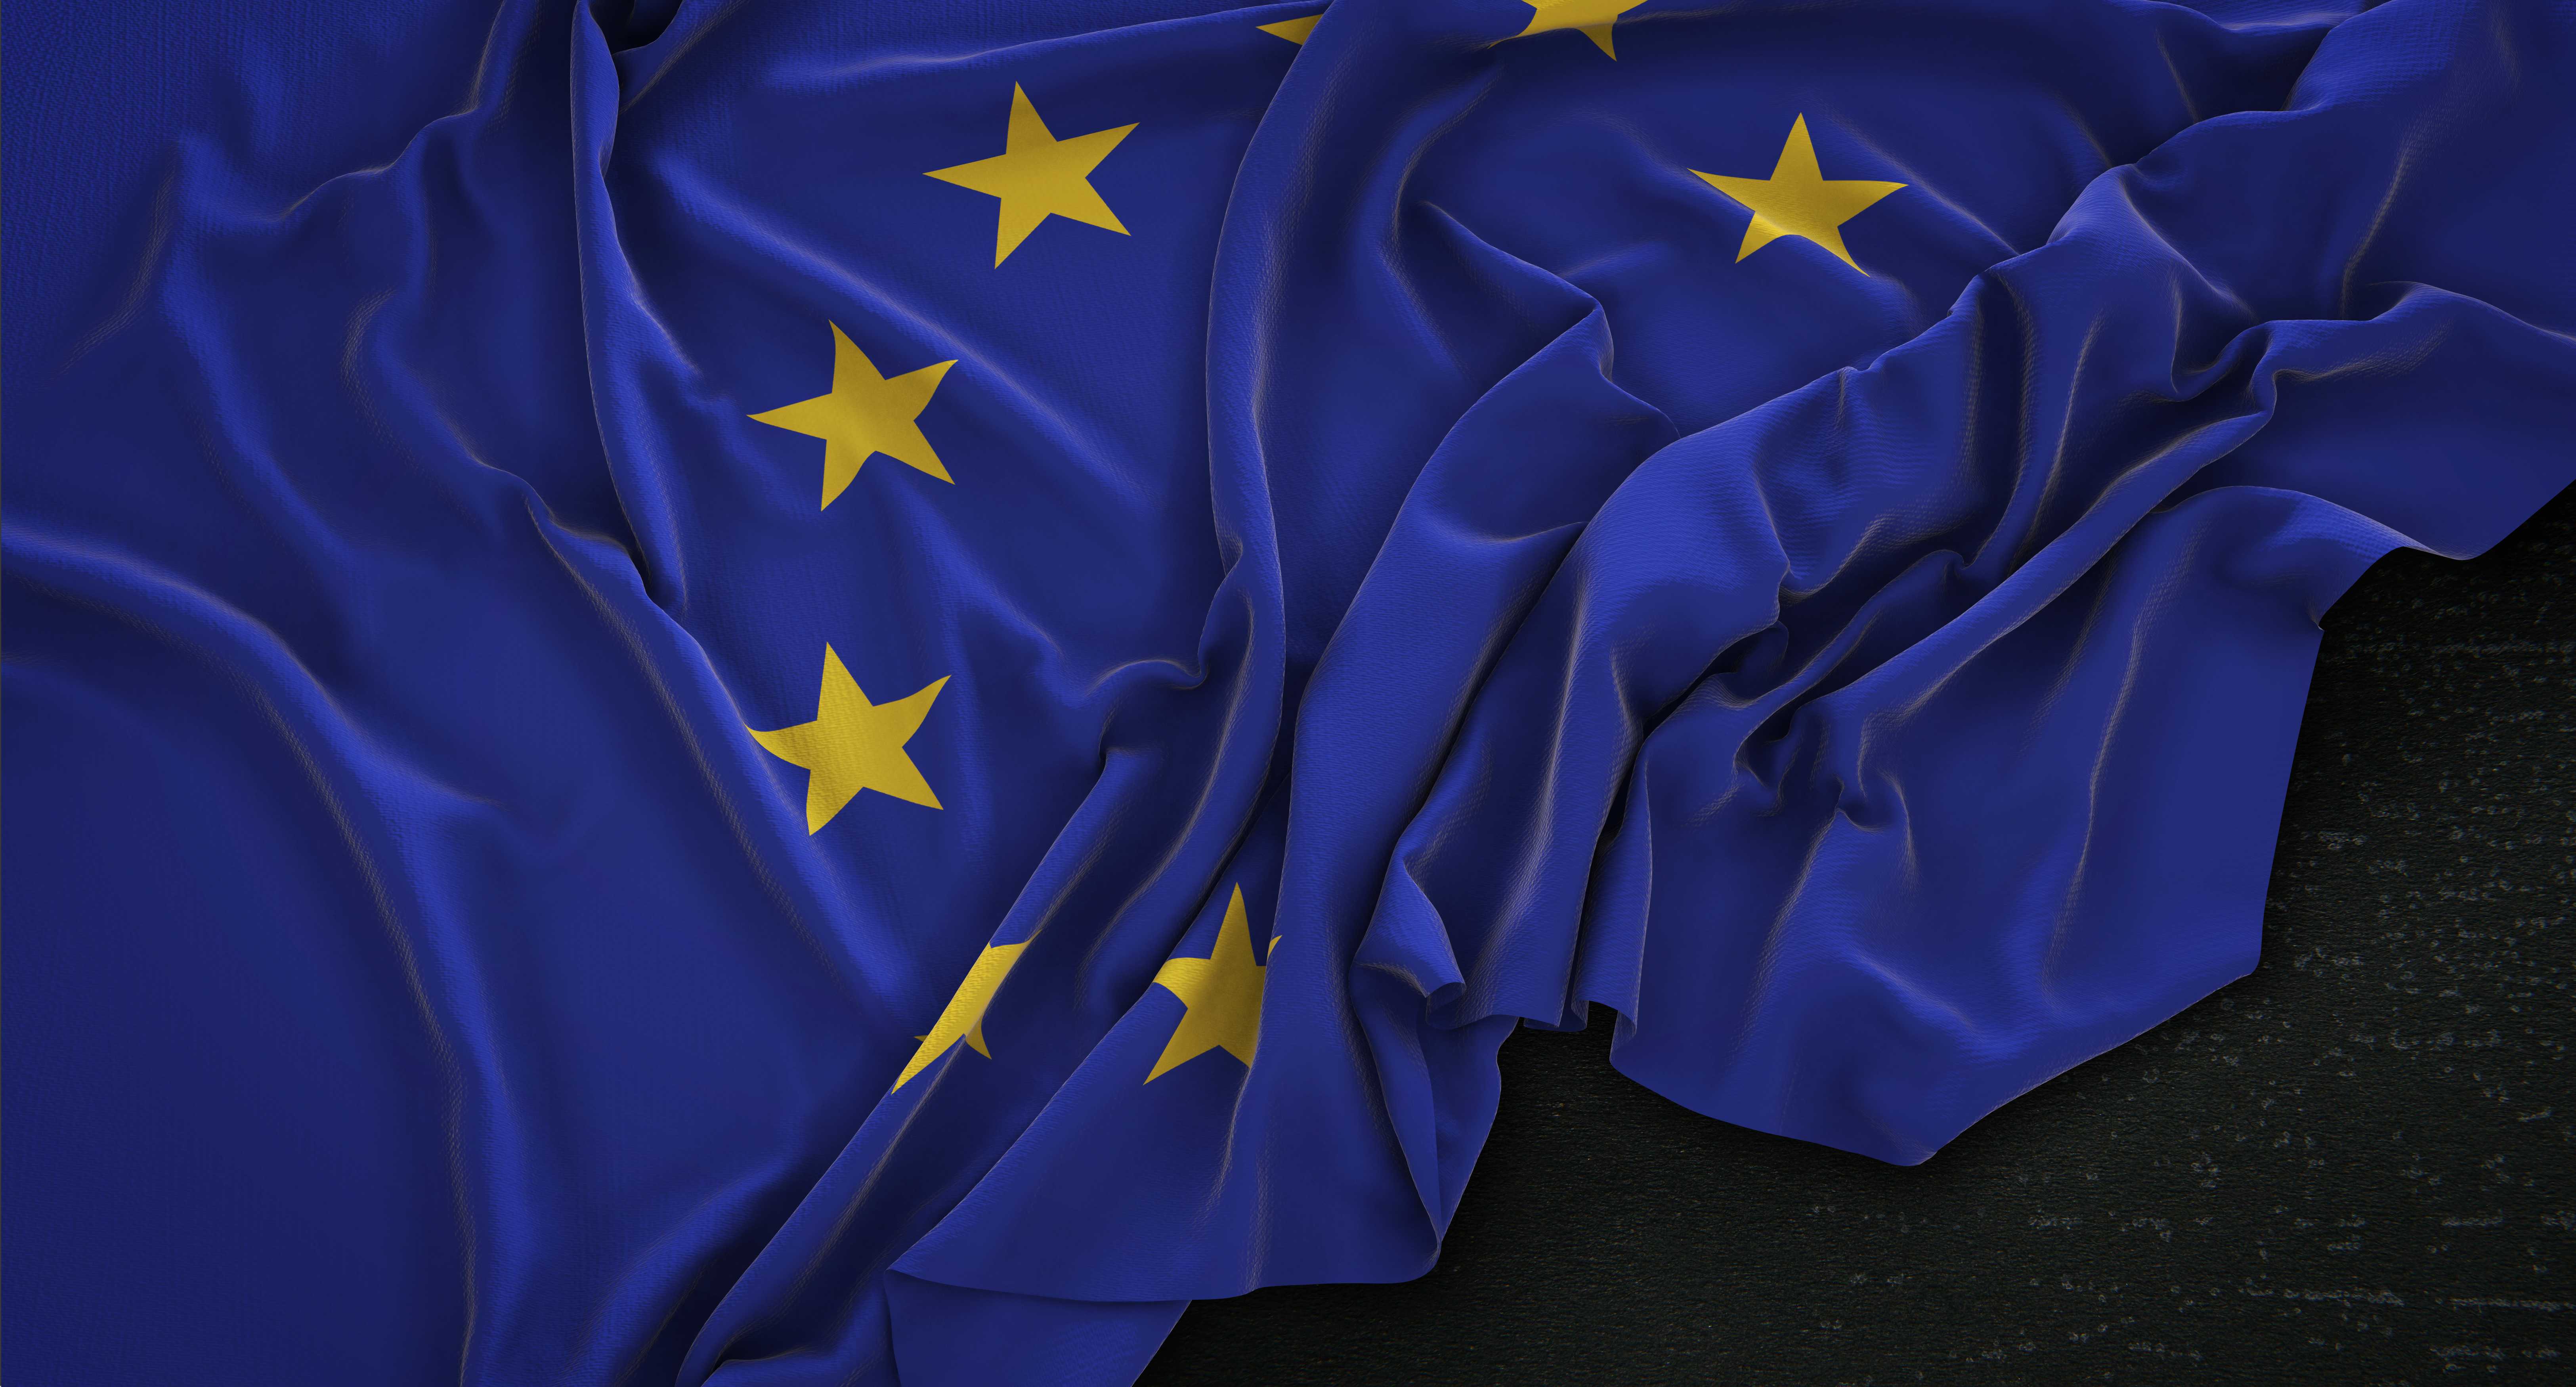 european-flag-wrinkled-dark-background-3d-render.jpg